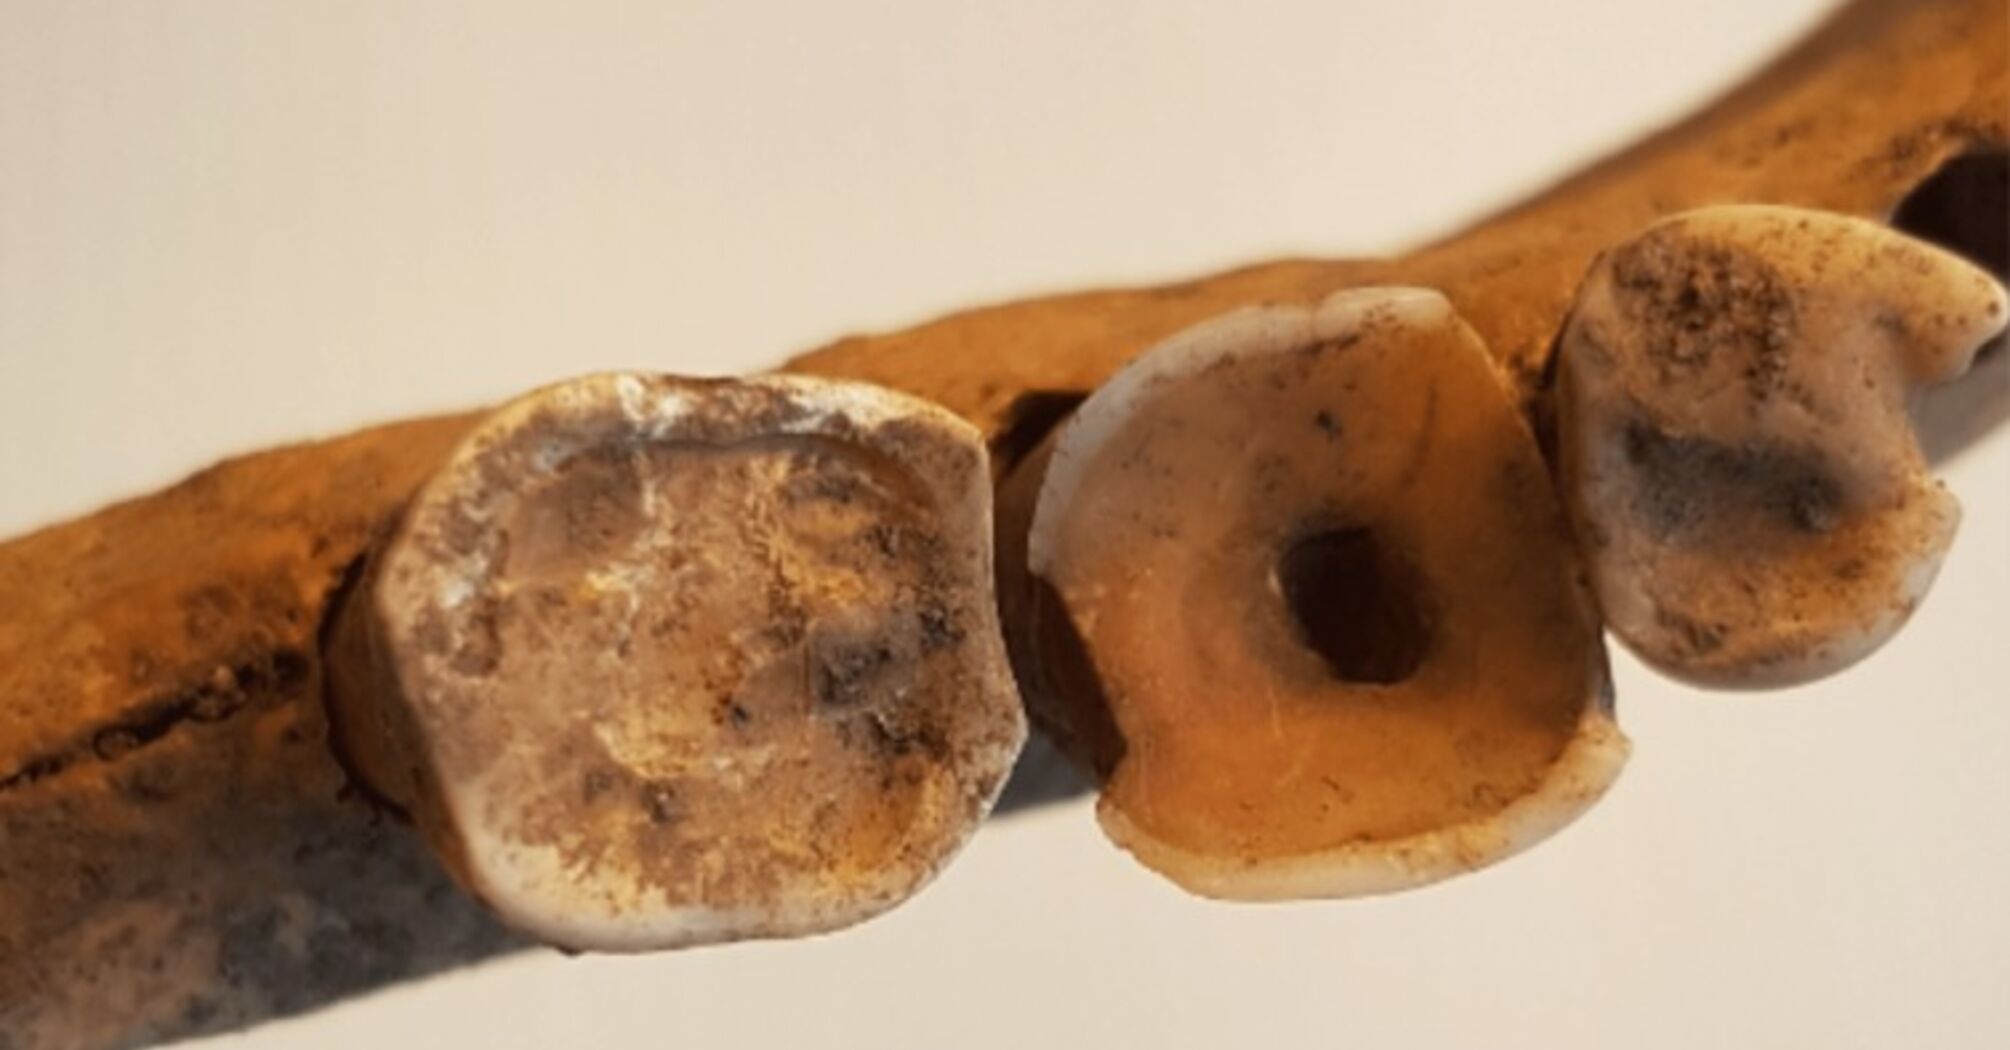 Викинги и стоматология: археологи обнаружили доказательства развитой медицины в средневековье (фото)